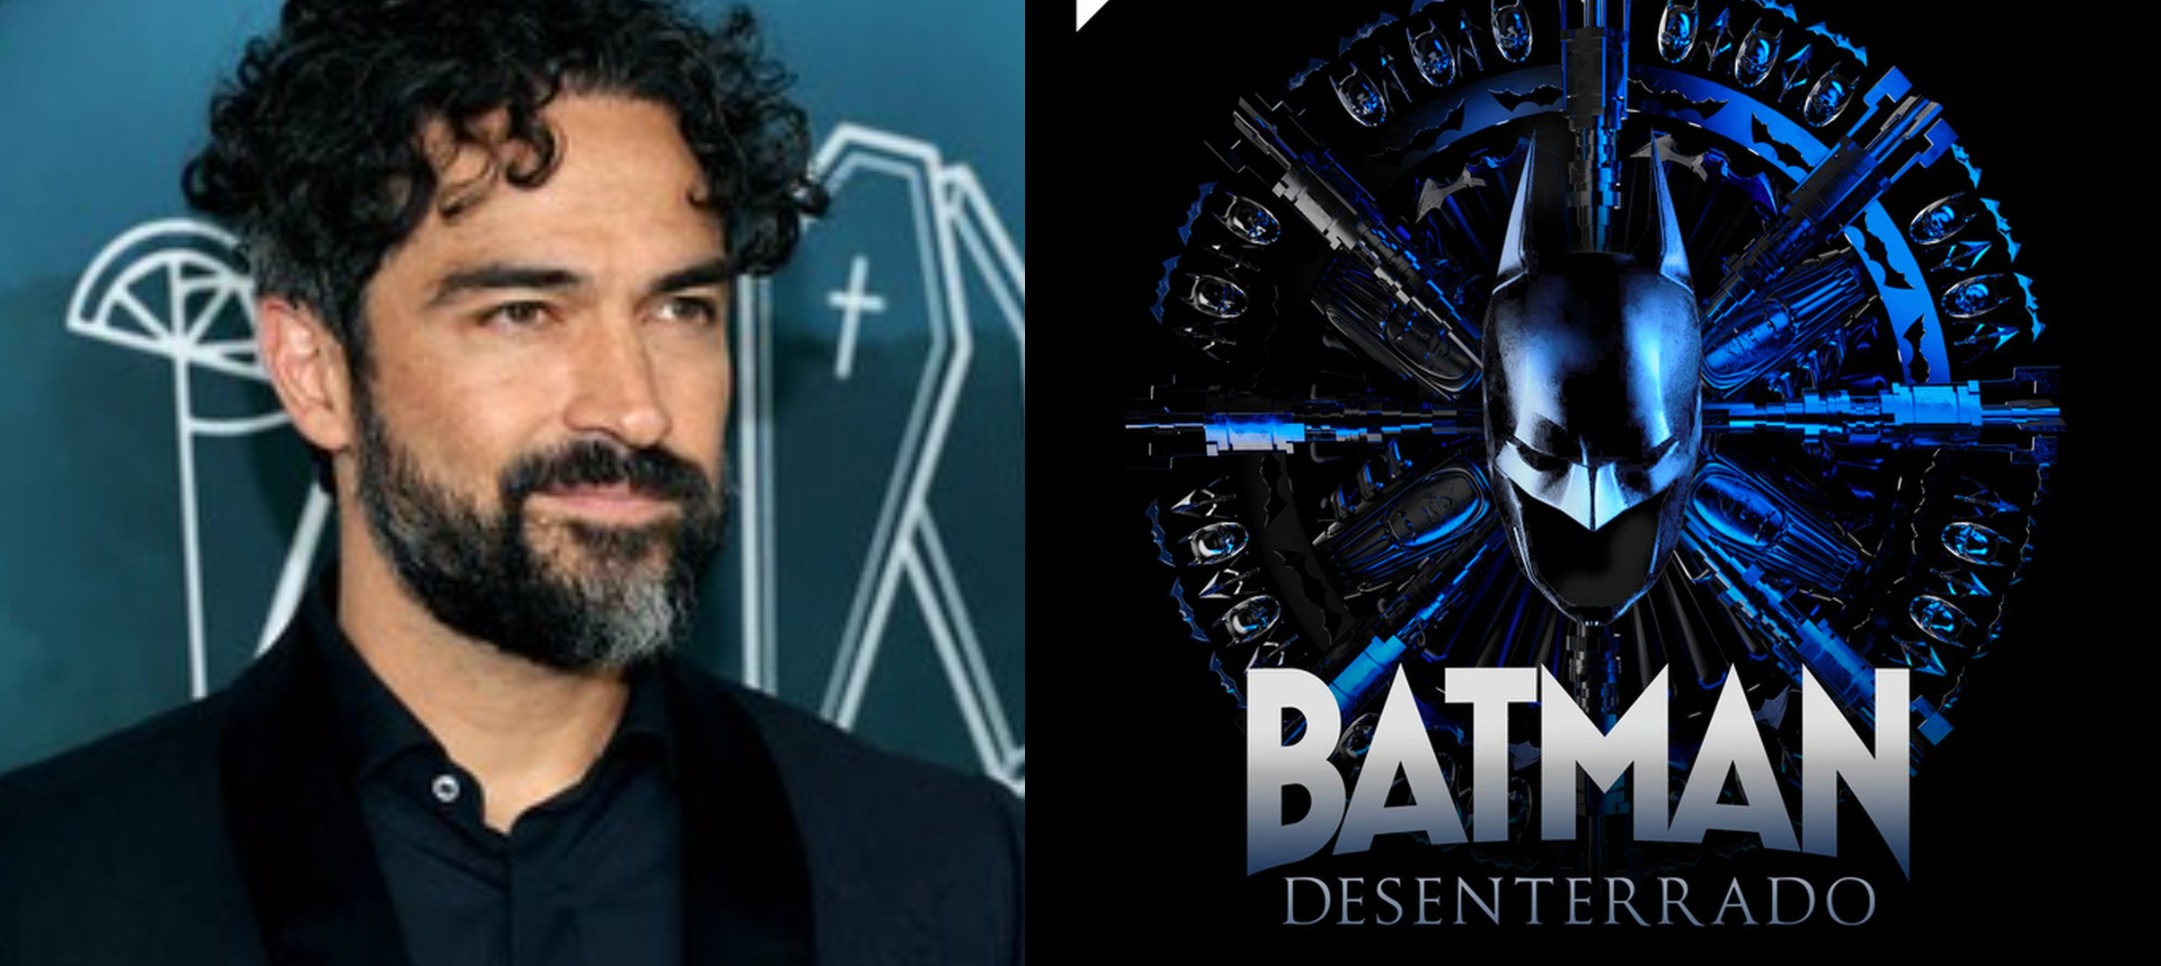 El podcast 'Batman Desenterrado' ya disponible en Spotify; escúchalo aquí